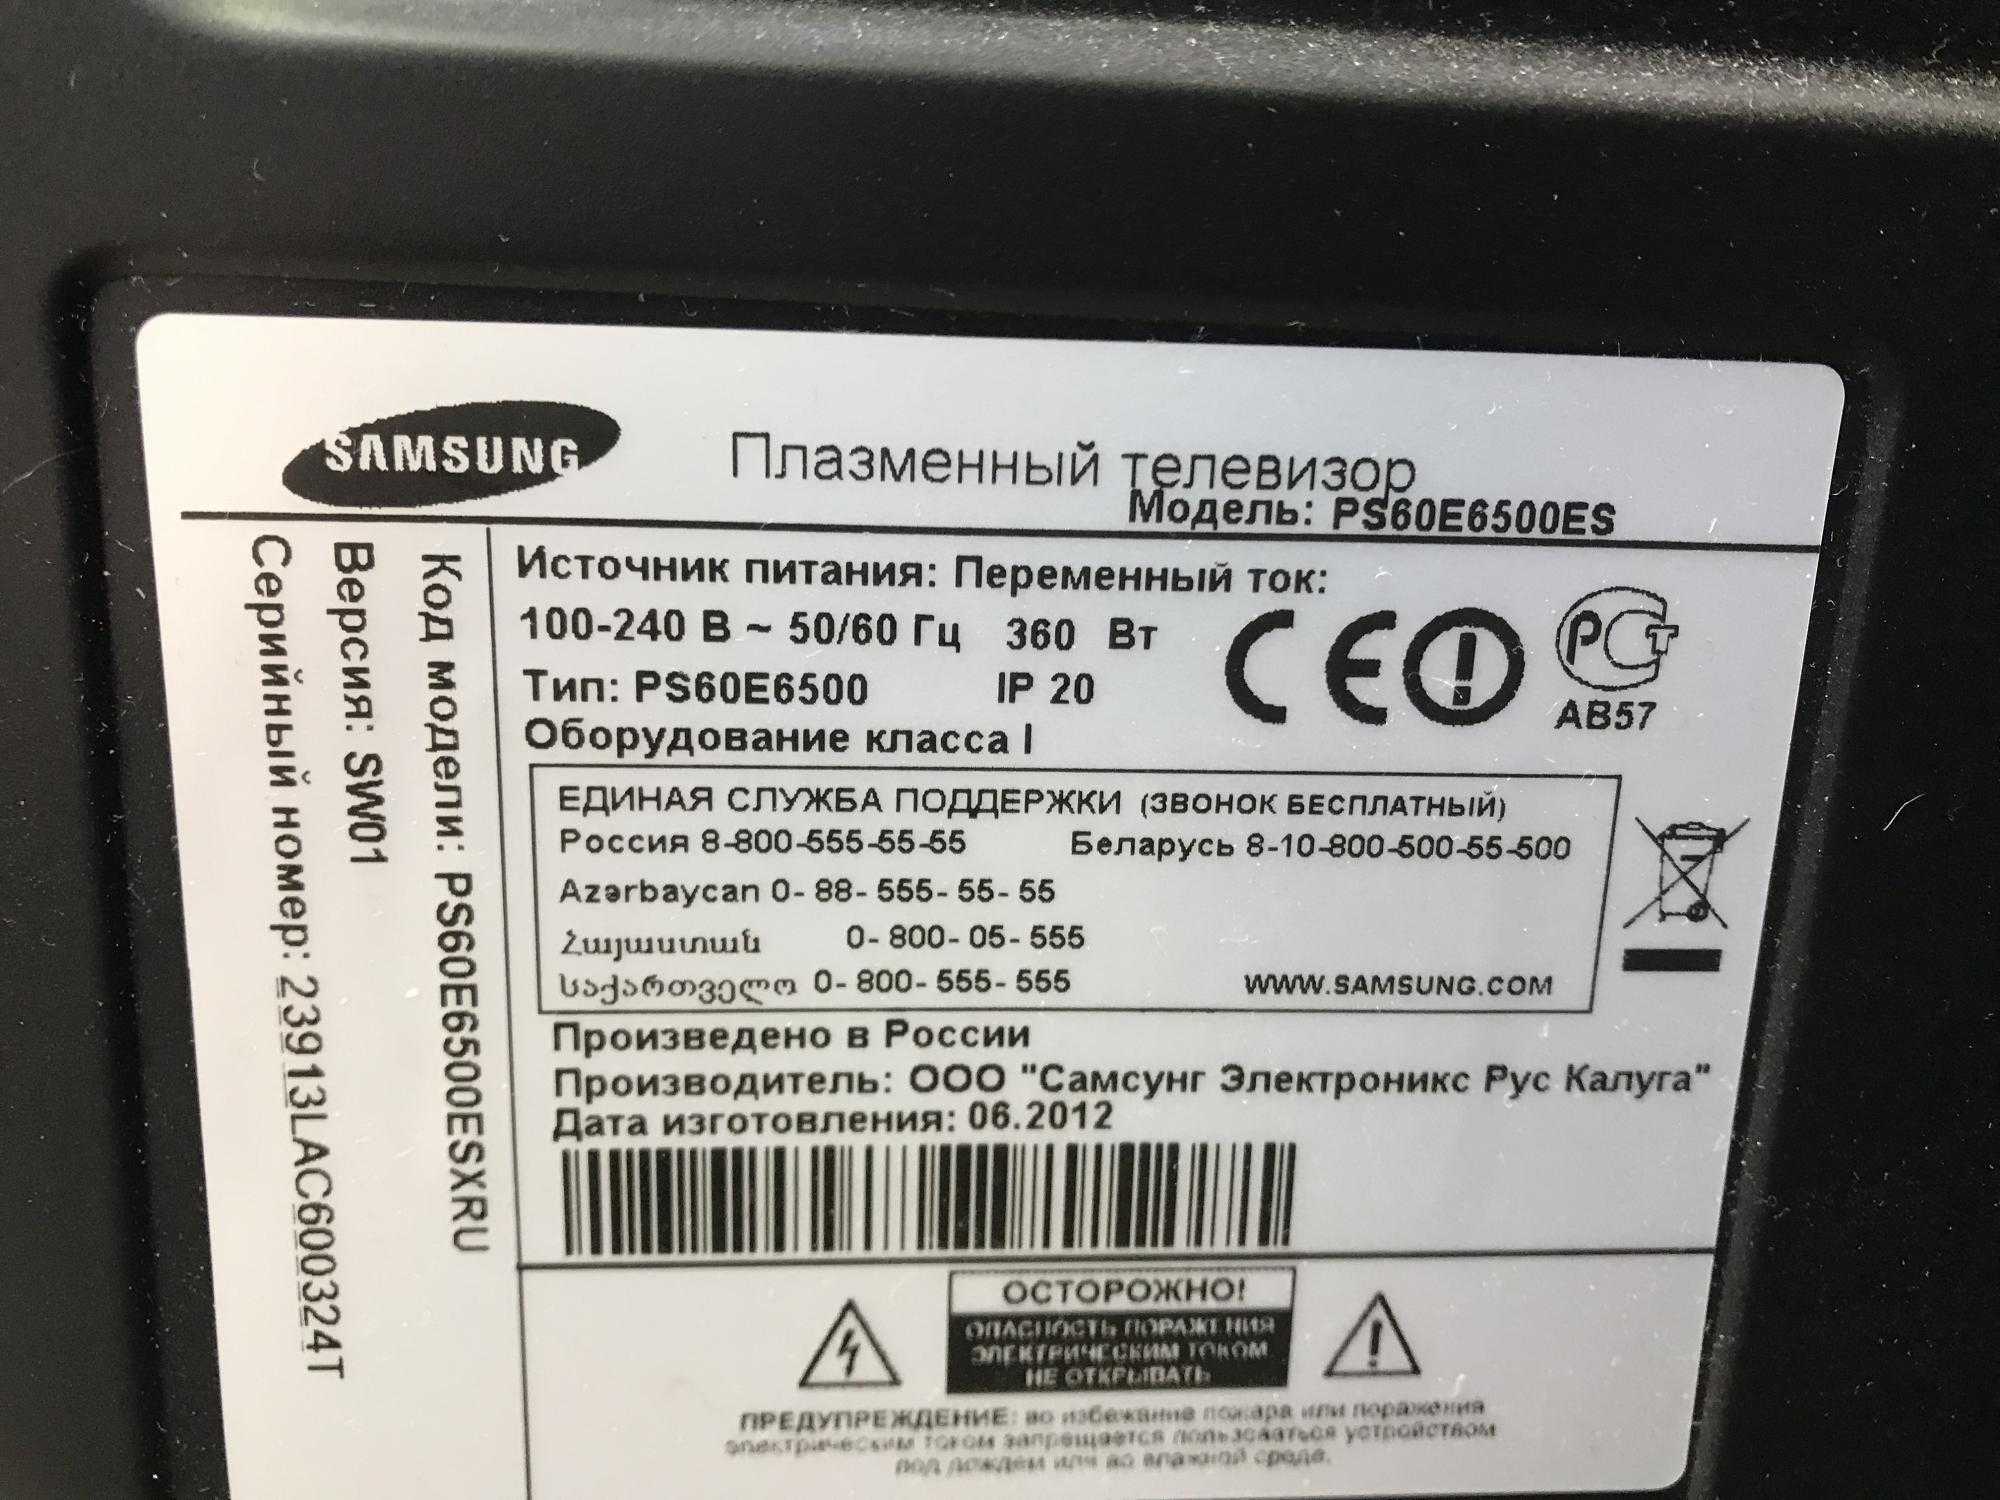 Samsung ps60e6500 - купить  в санкт-петербург, скидки, цена, отзывы, обзор, характеристики - телевизоры